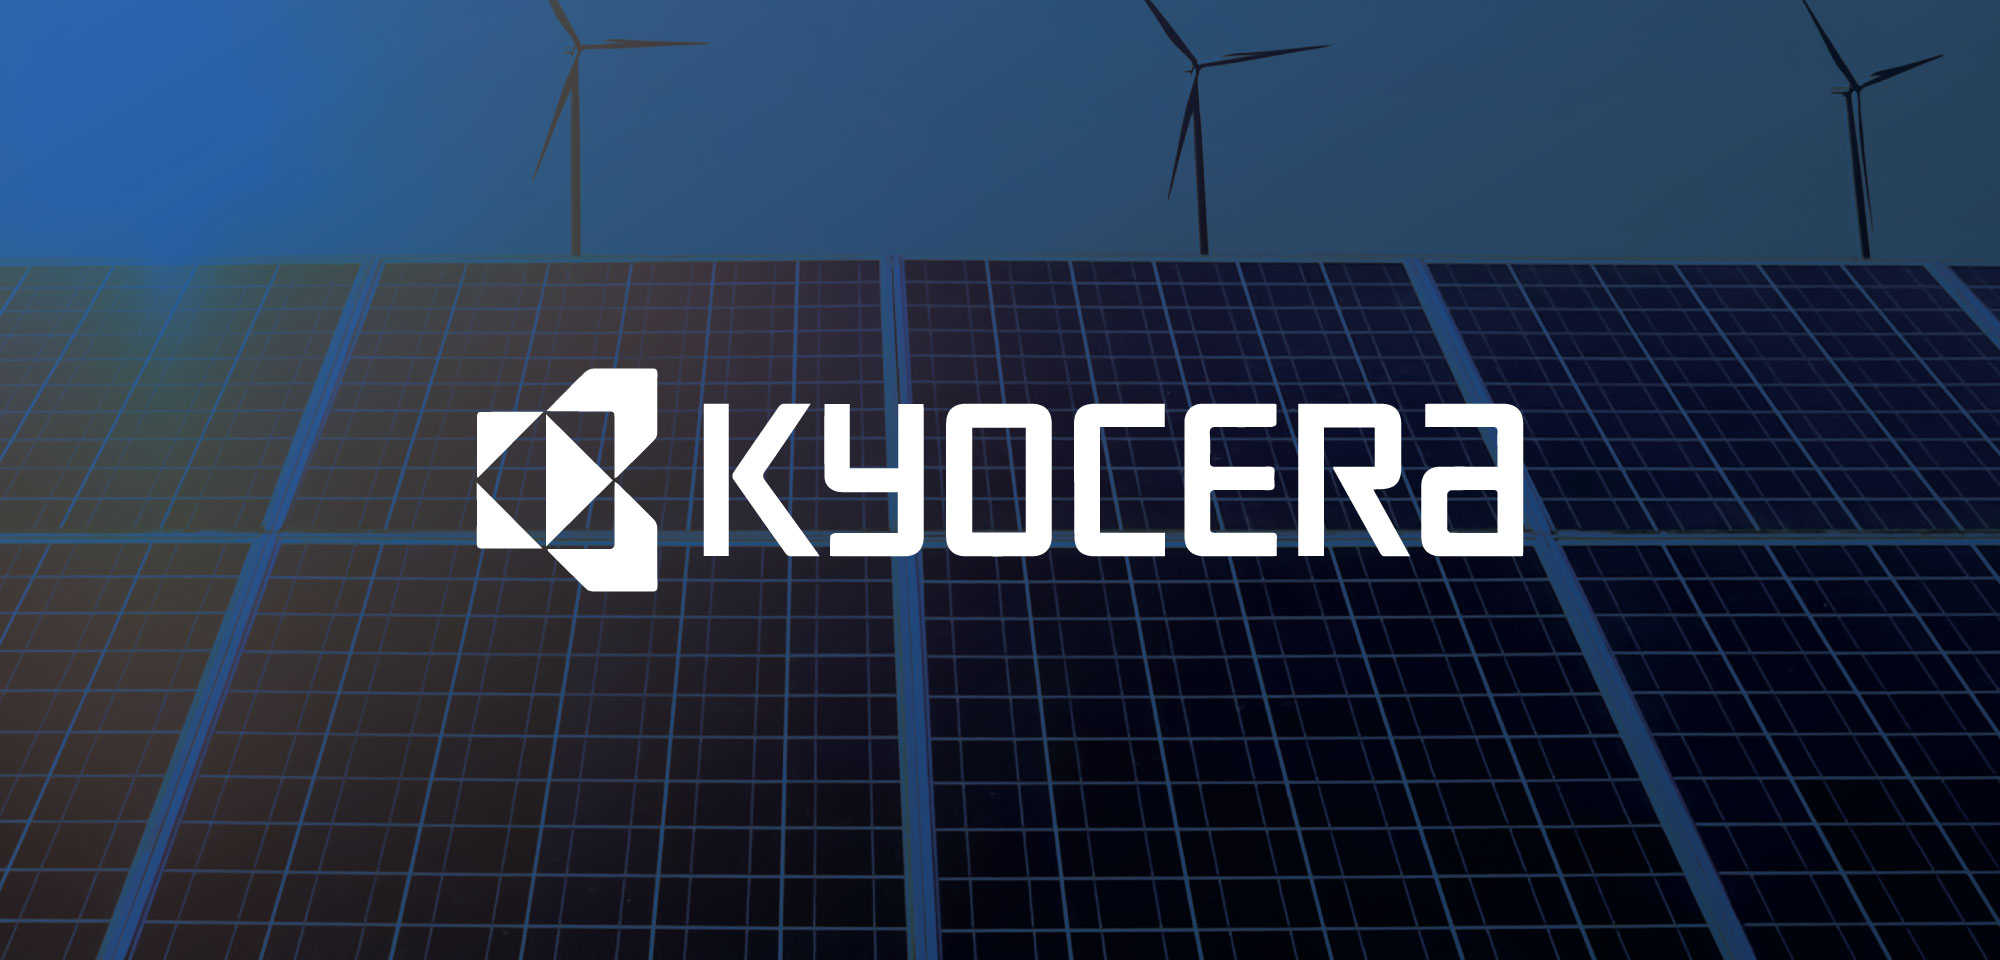 Are Kyocera solar panels any good?